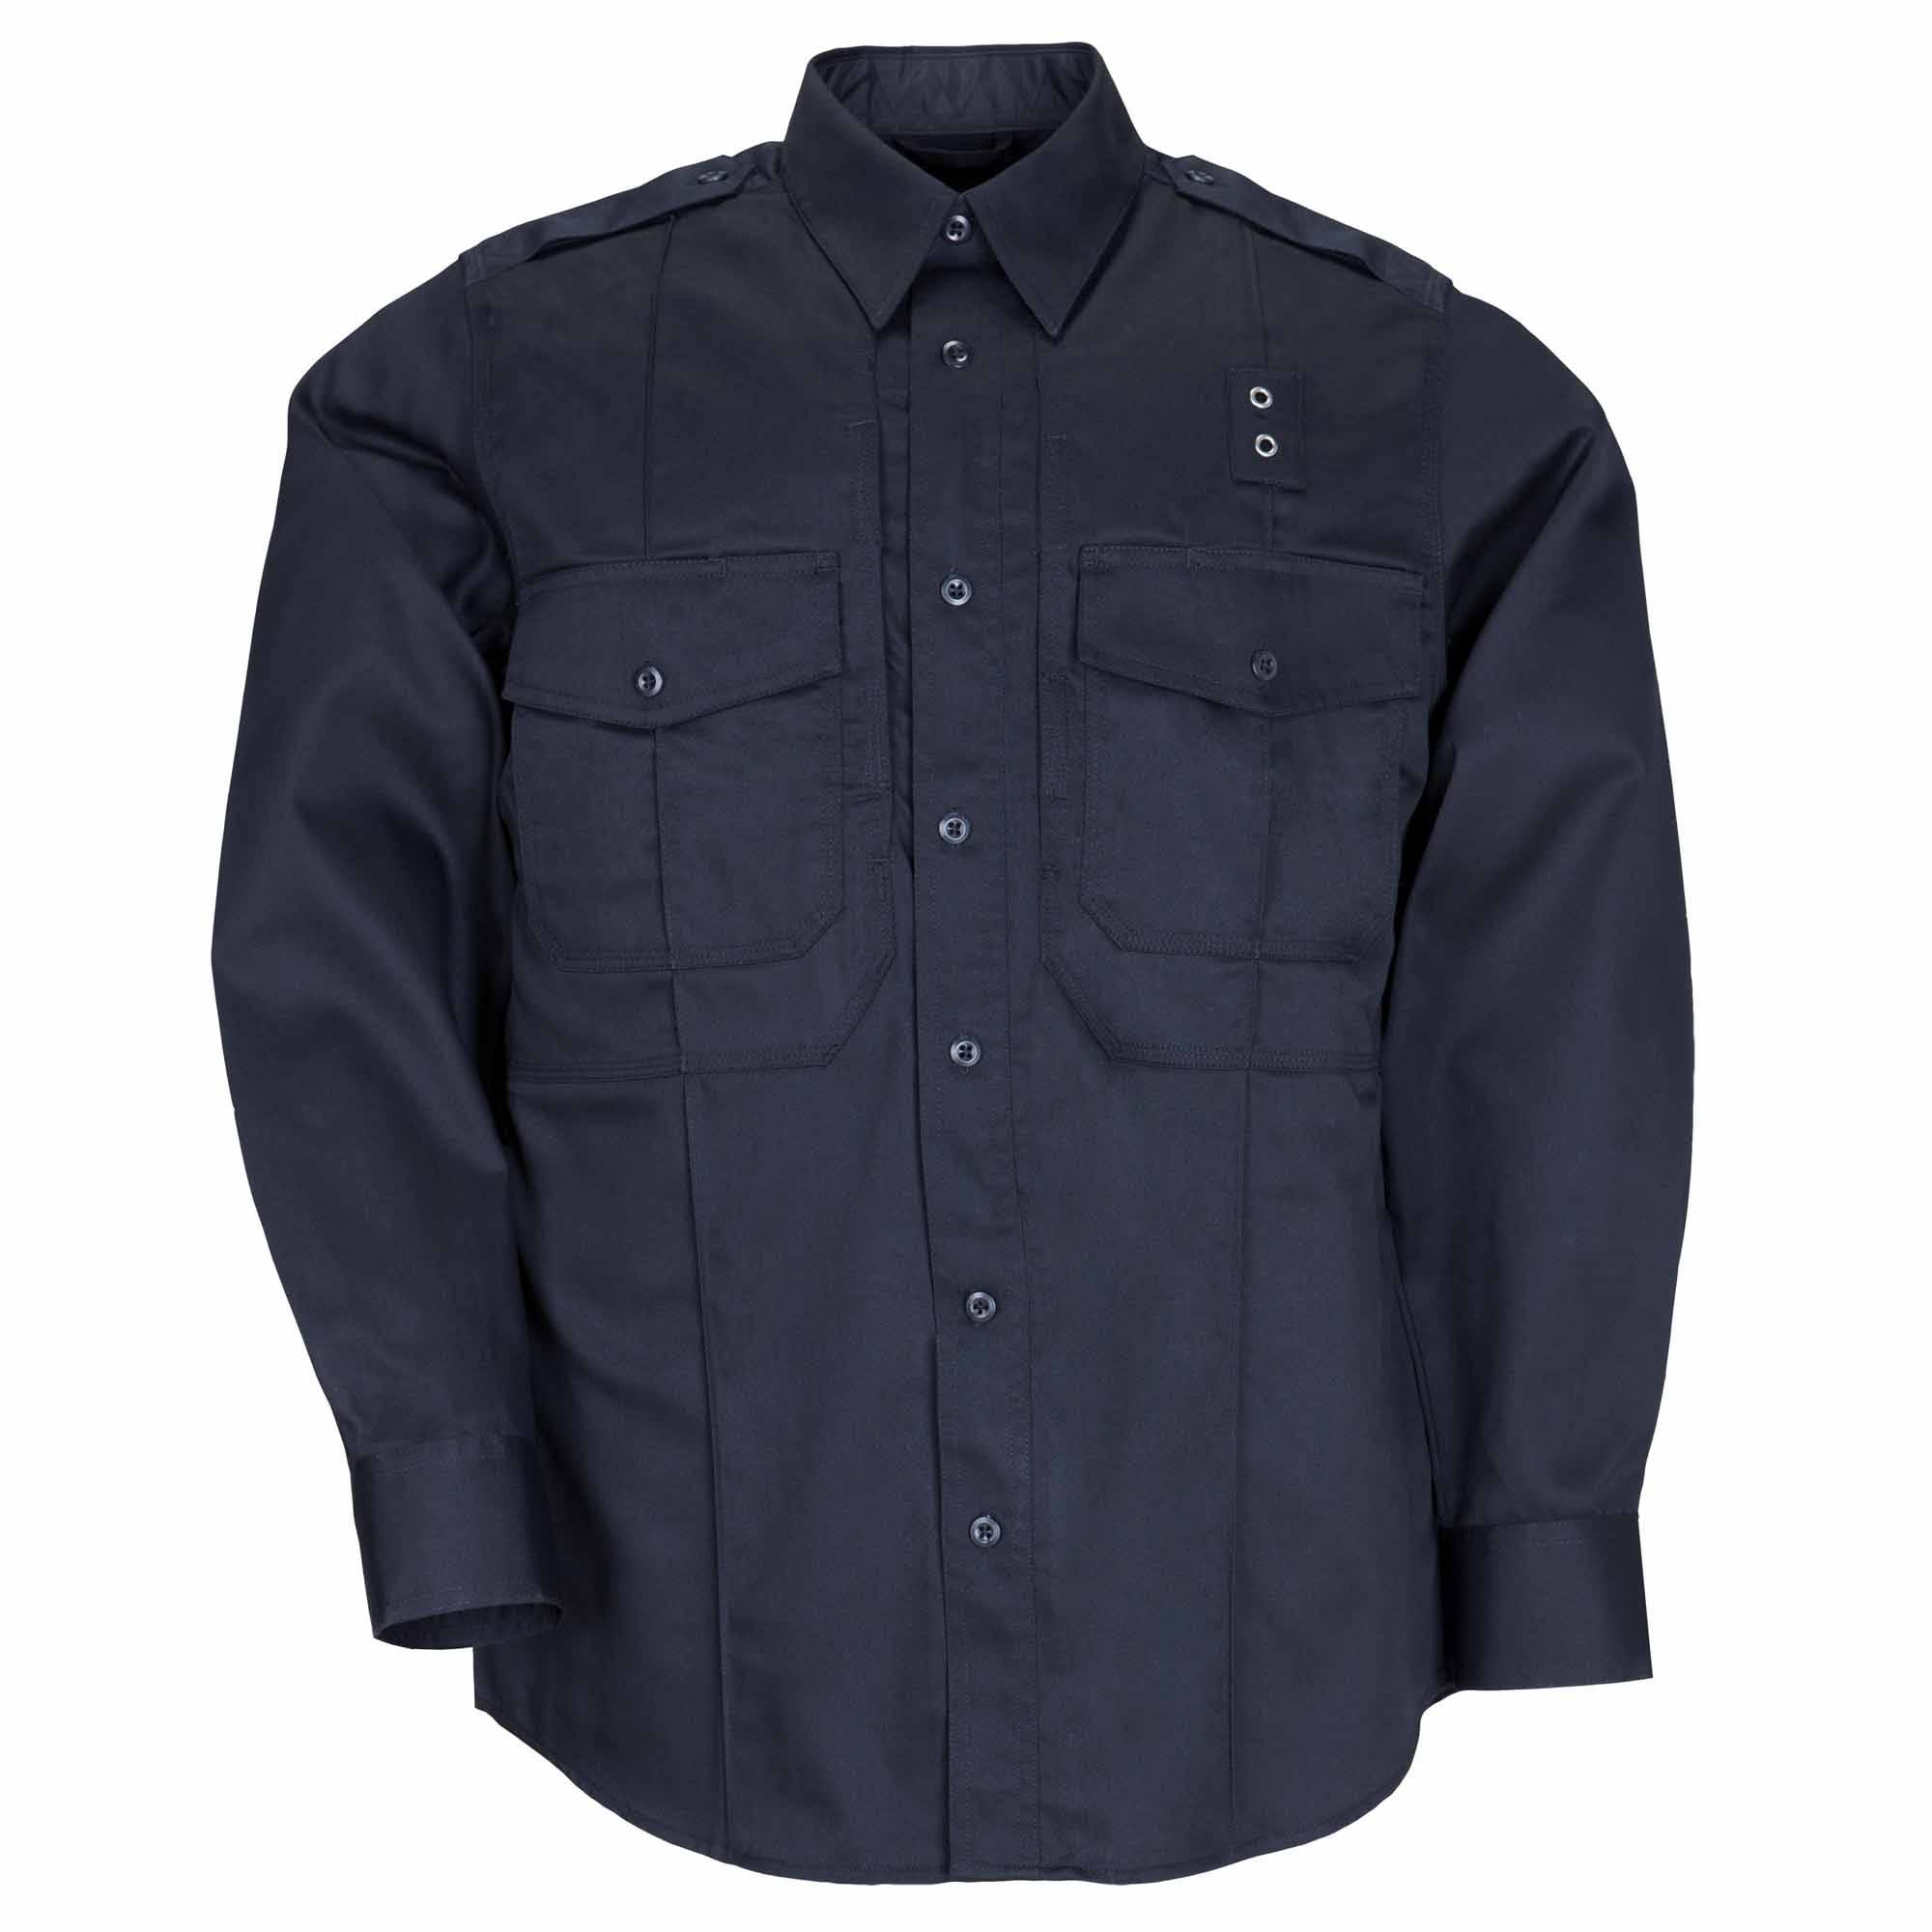 Taclite® Pro Long Sleeve Shirt - 5.11 Tactical